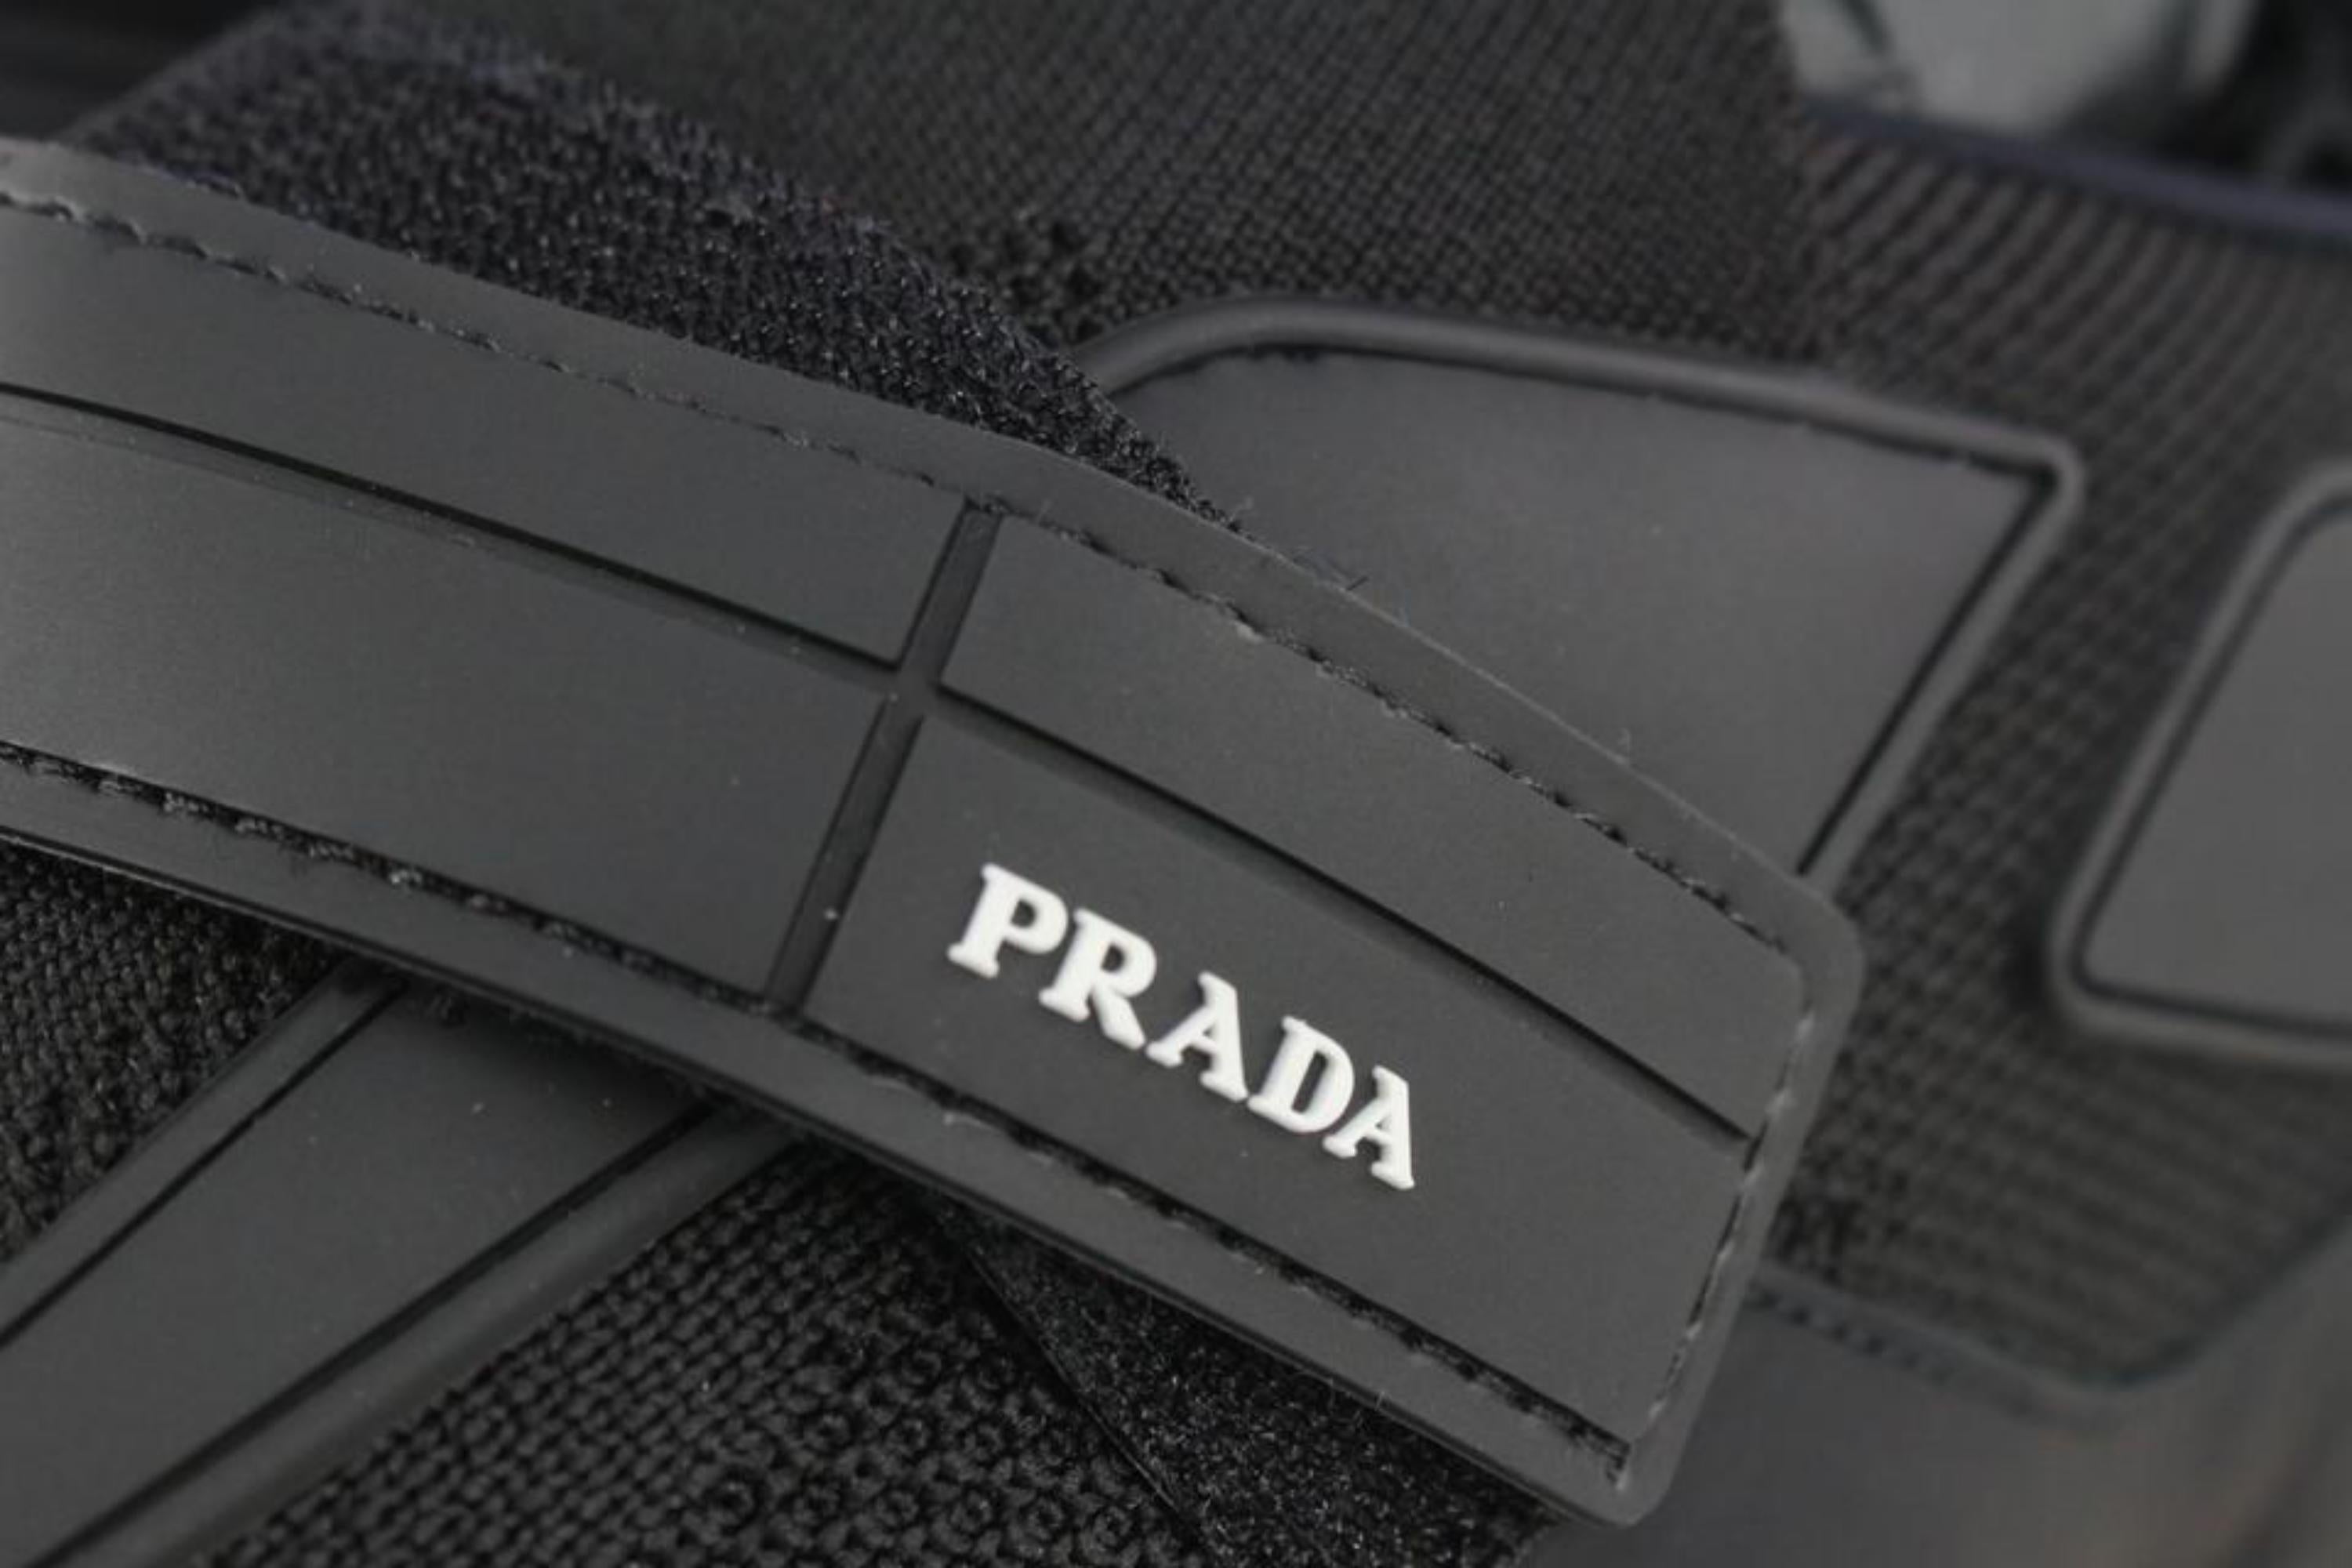 Prada Men's 11 20g064 Black x Gold Cloudbust Sneakers 1116p48 4